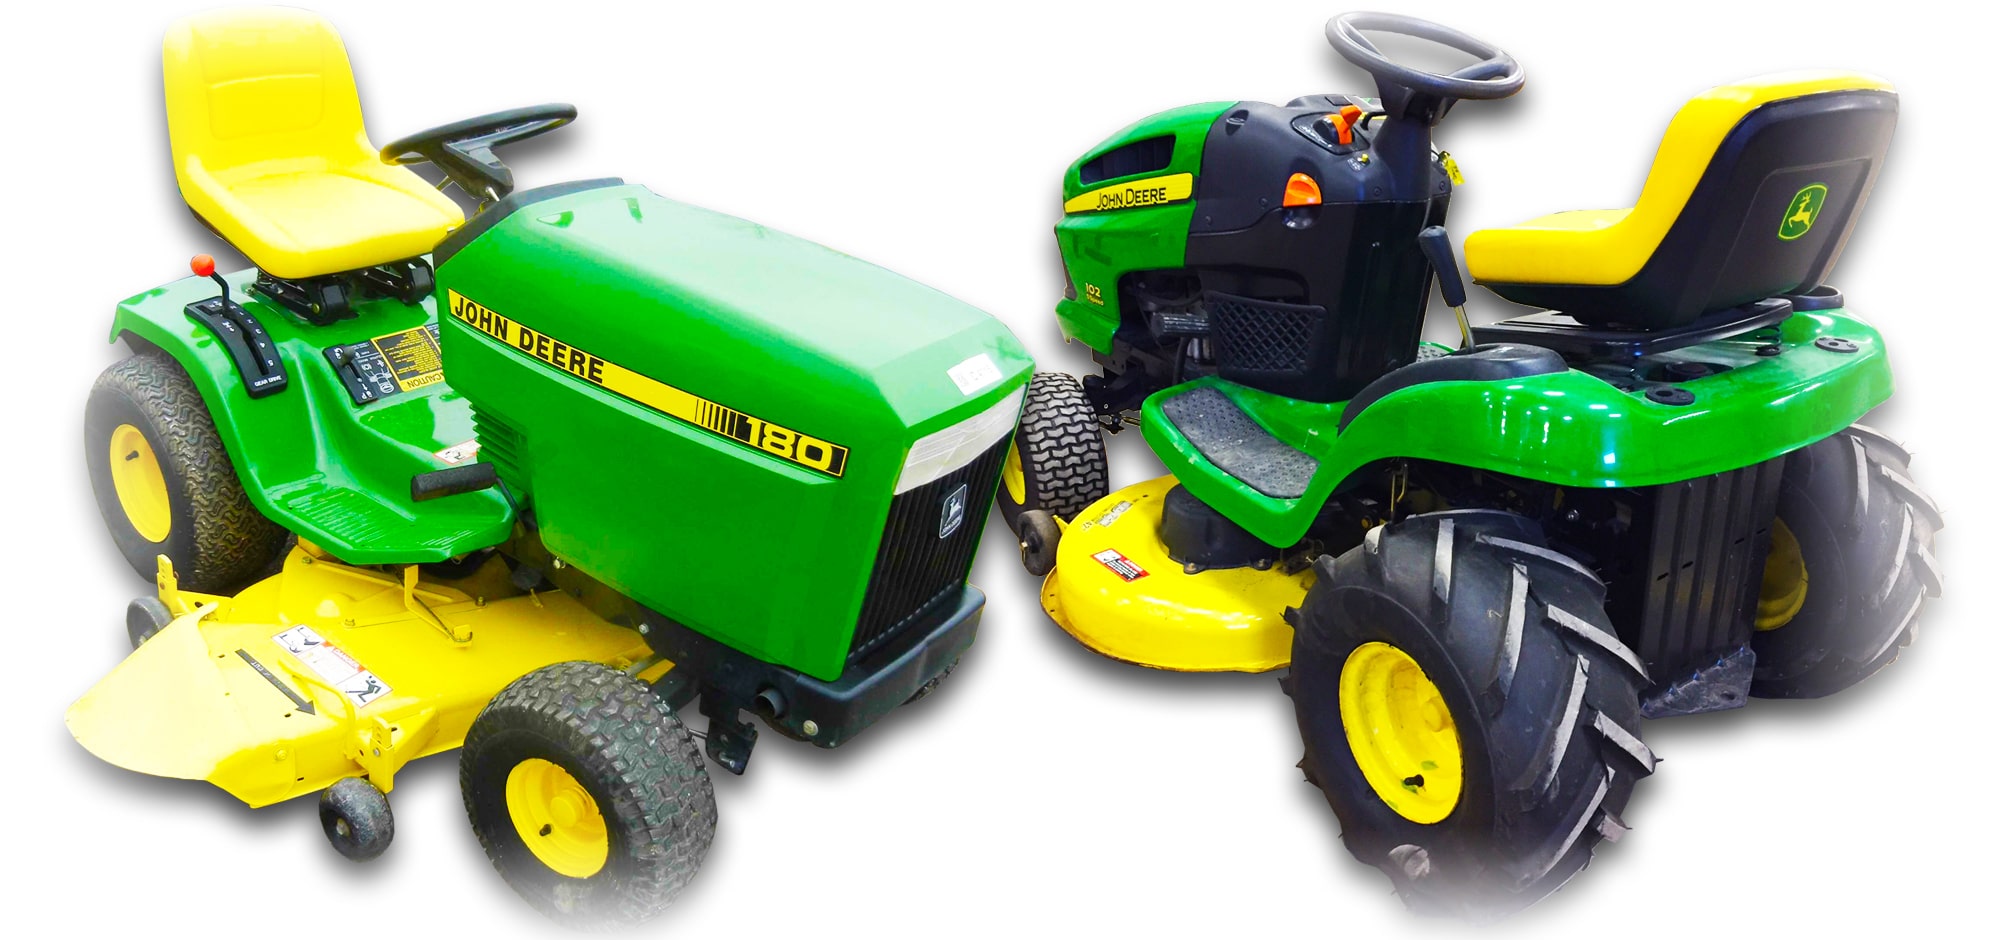 John Deere 100 Series Lawn & Garden Tractors